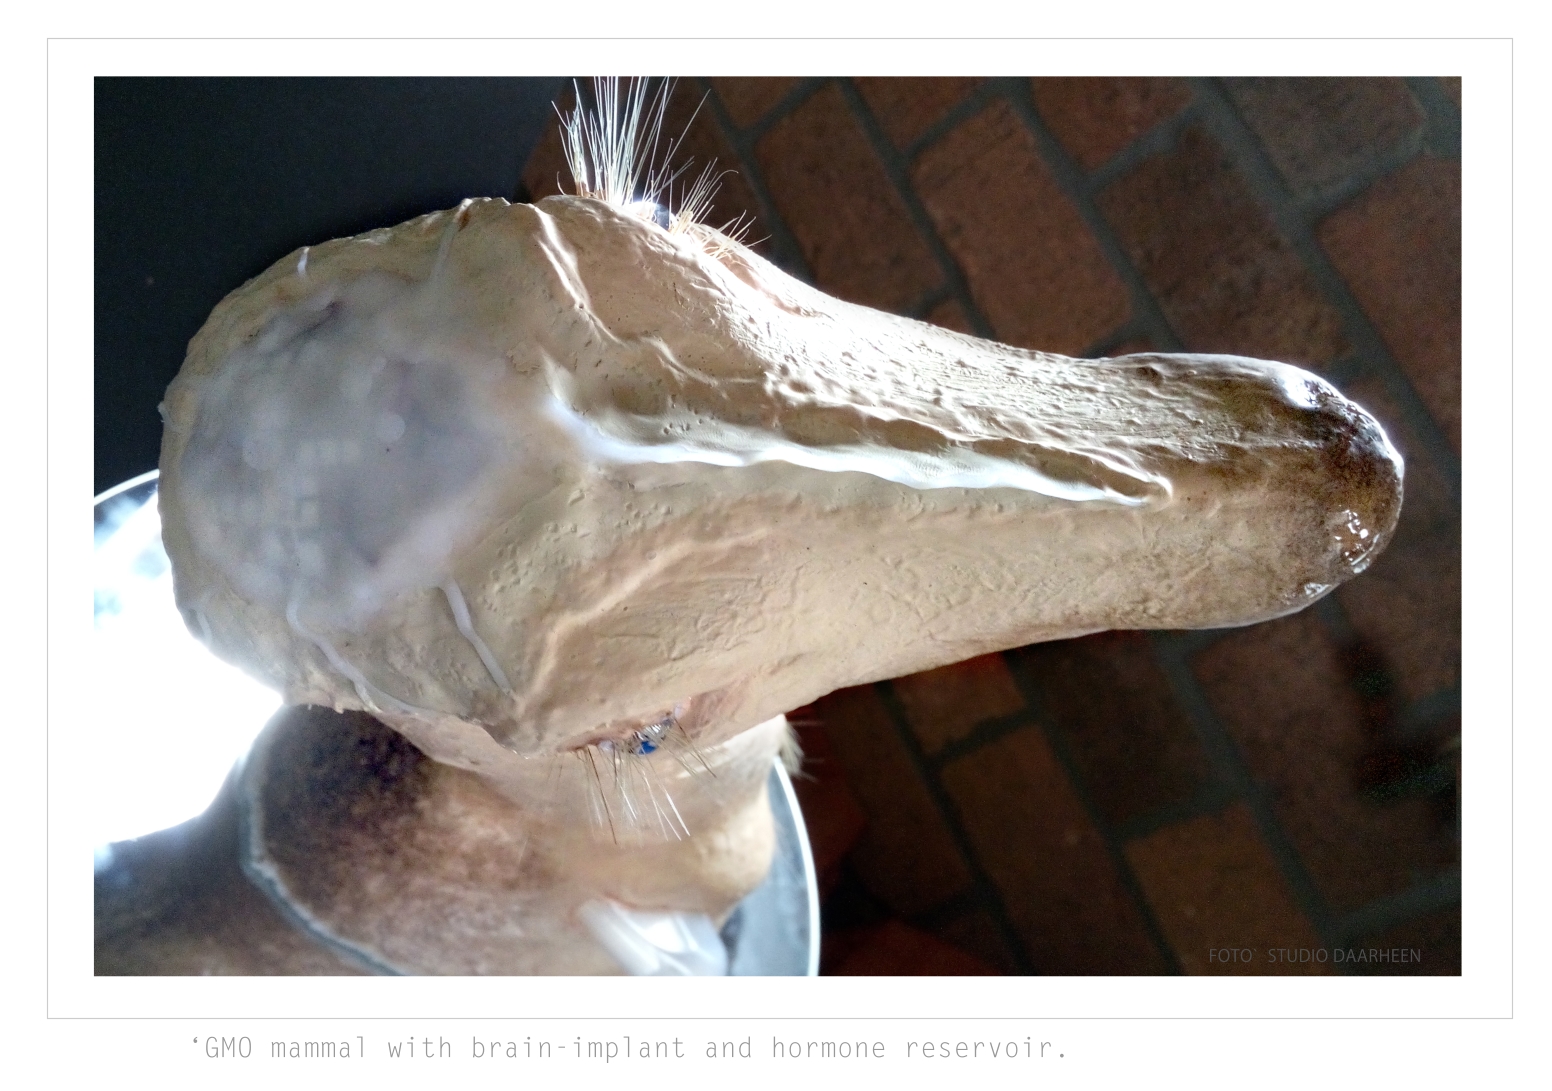 ArtStudio Daarheen_ BioArt _hormone deer with brainimplant under transparant skull bone. cranial window